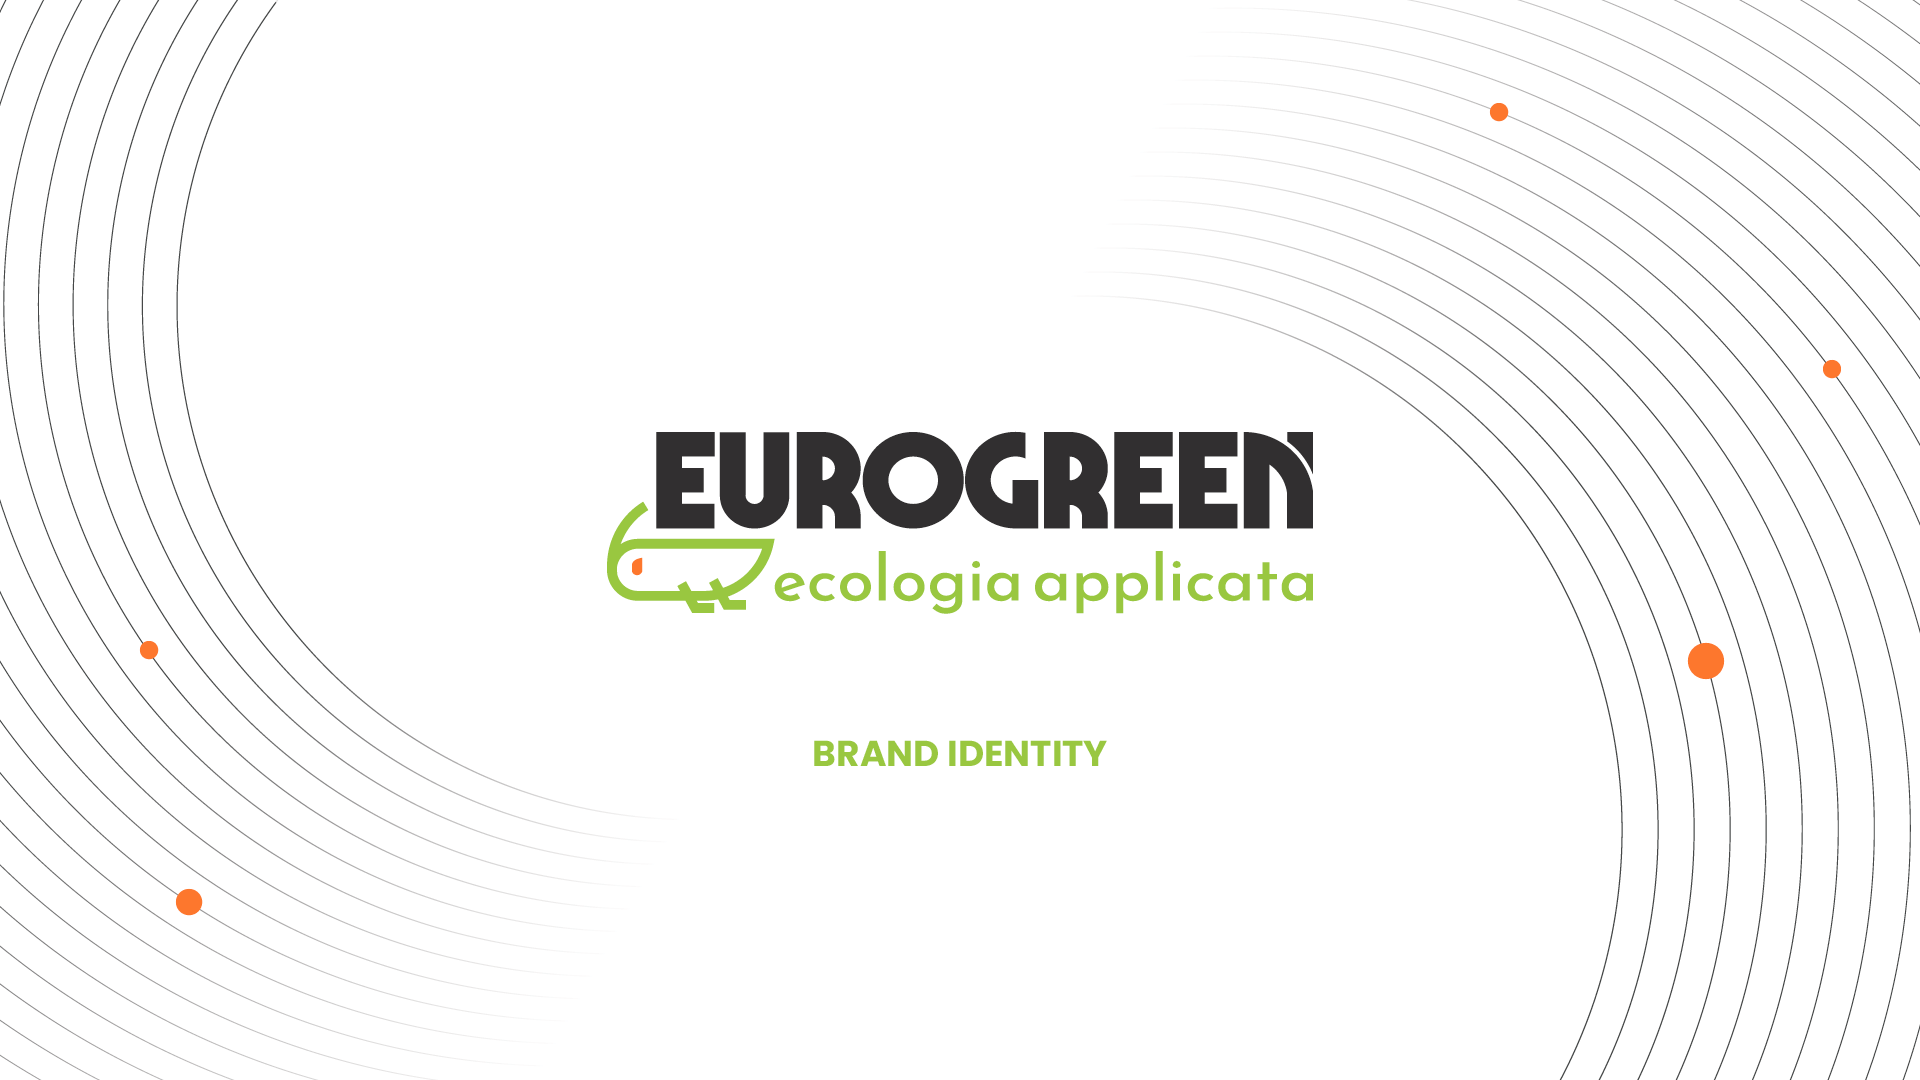 Eurogreen rebranding